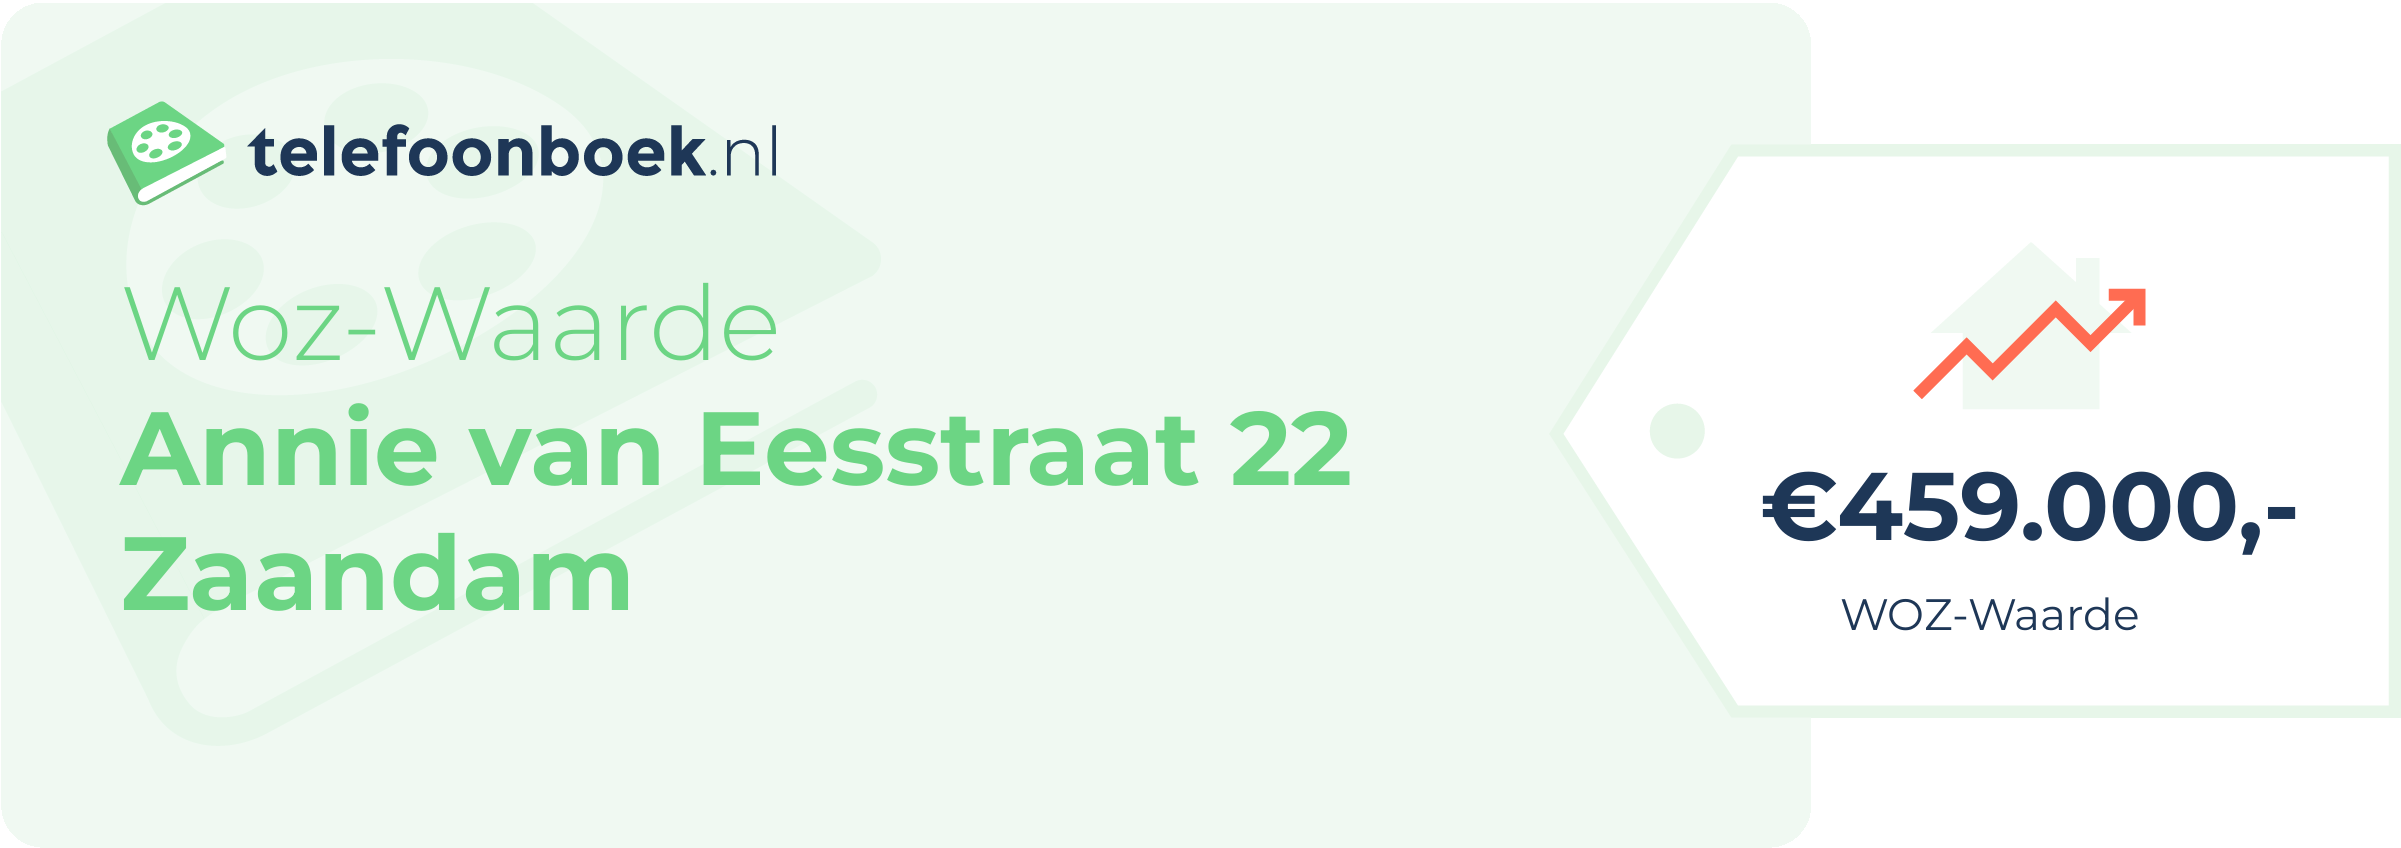 WOZ-waarde Annie Van Eesstraat 22 Zaandam